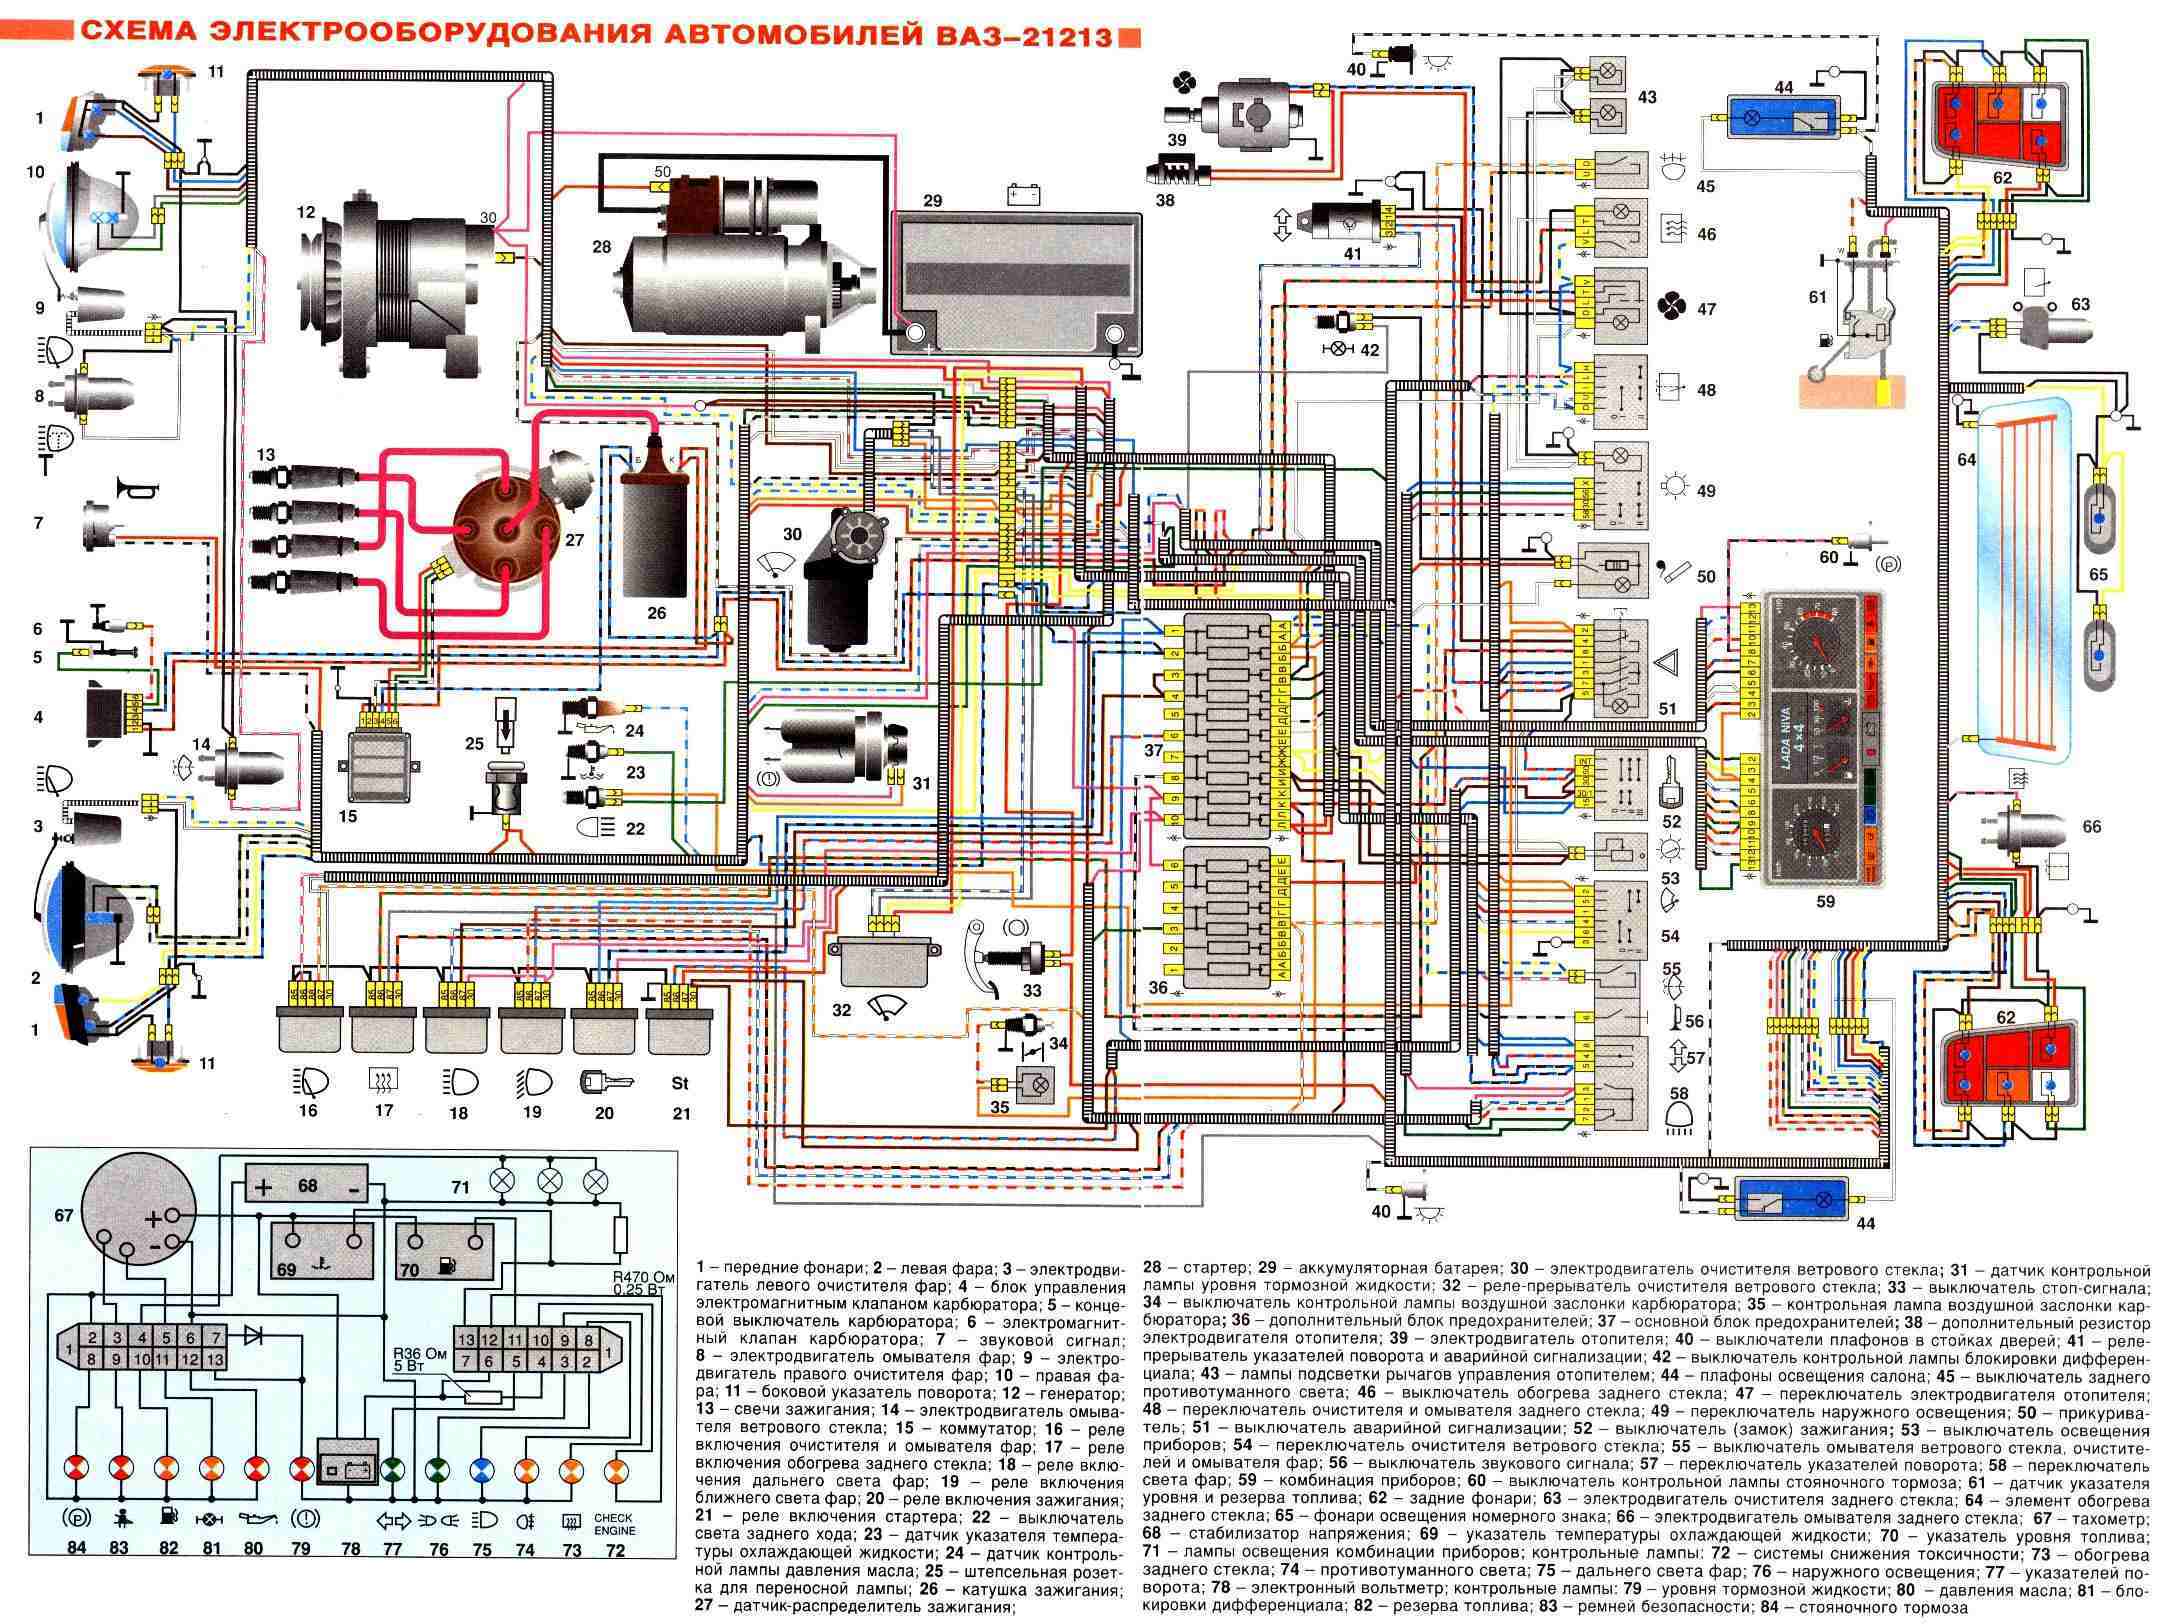 Схема электропроводки ваз 21213 изучаем и обслуживаем проводку своими руками: инструкция с видео и фото • сам автоэлектрик